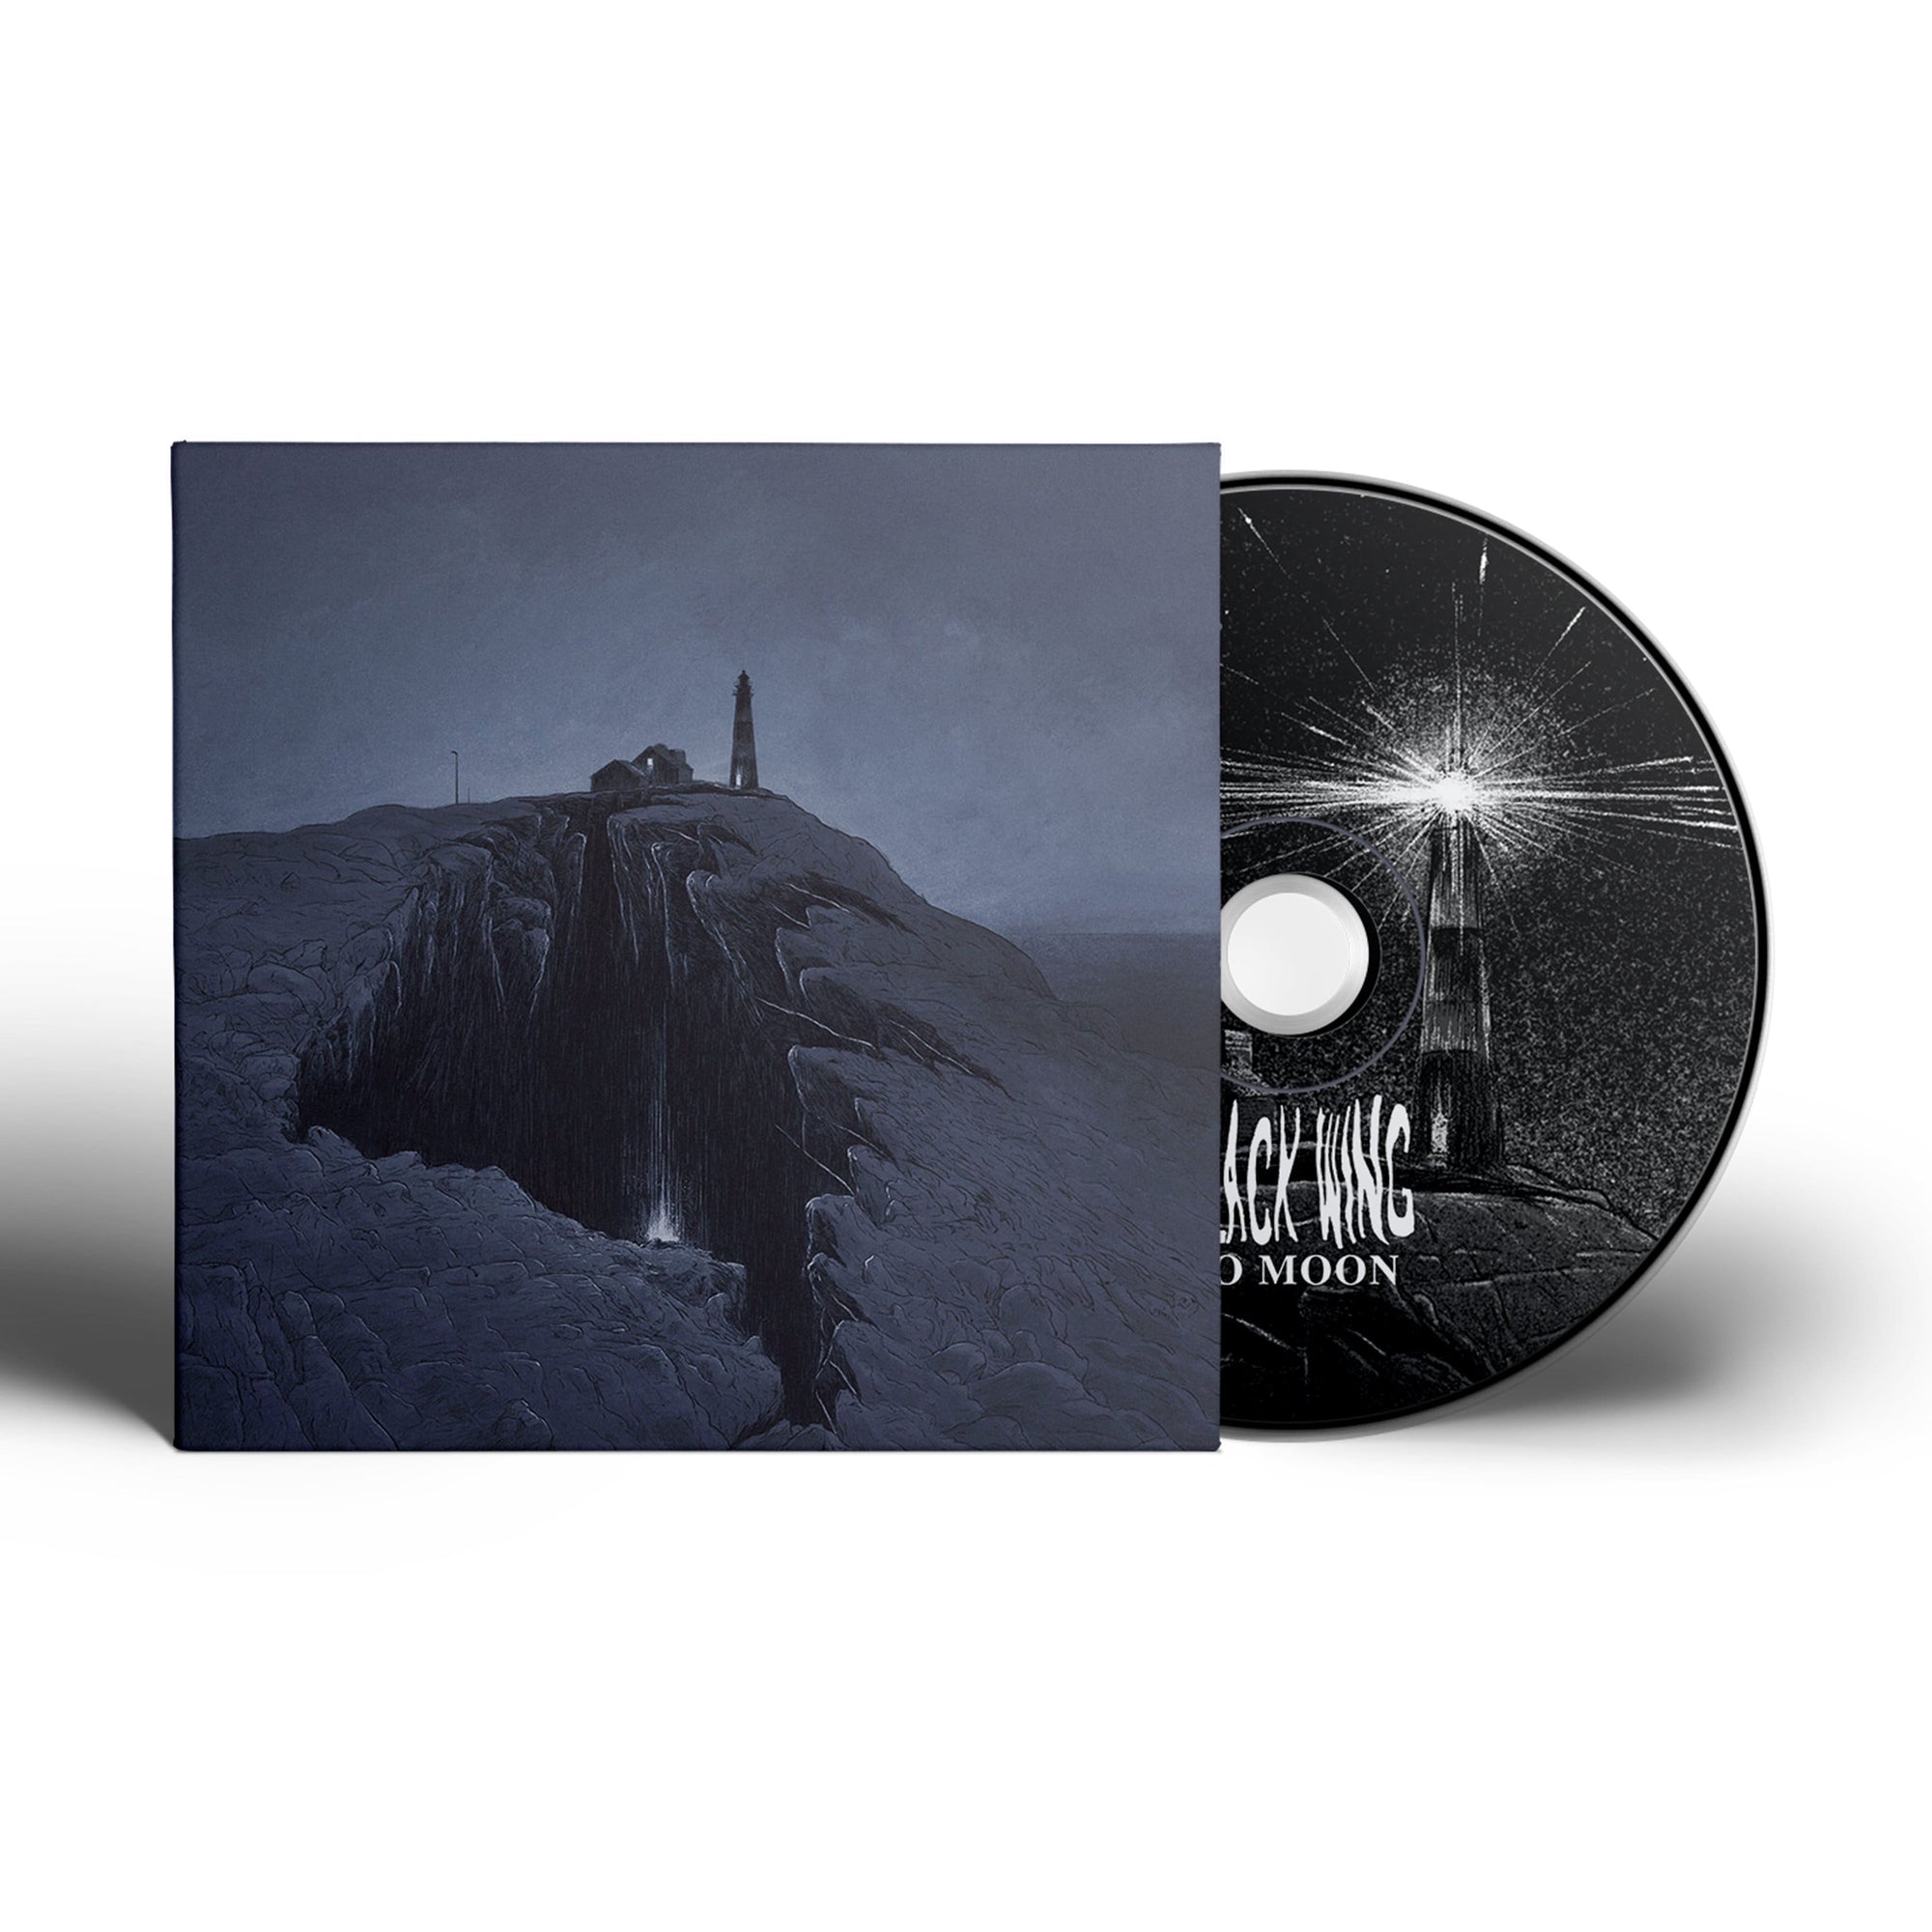 The Flenser CD Black Wing "No Moon" CD